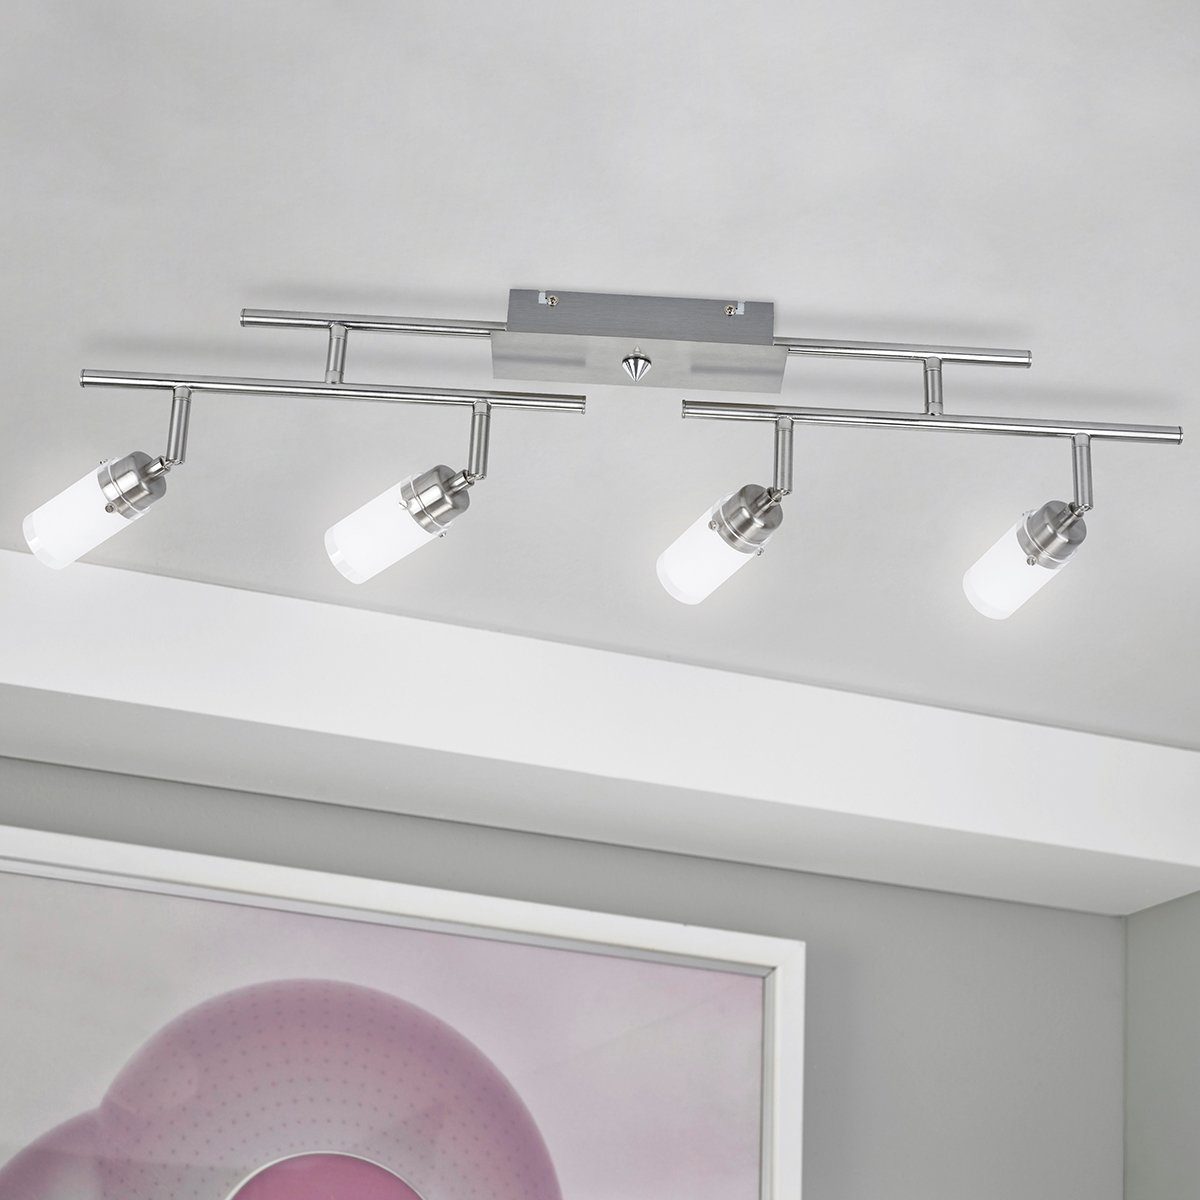 MeLiTec LED Deckenleuchte D83, warmweiß, LED, Design, Deckenlampe,  Deckenstrahler, Wohnzimmer, Decken, Beleuchtung, Lampe